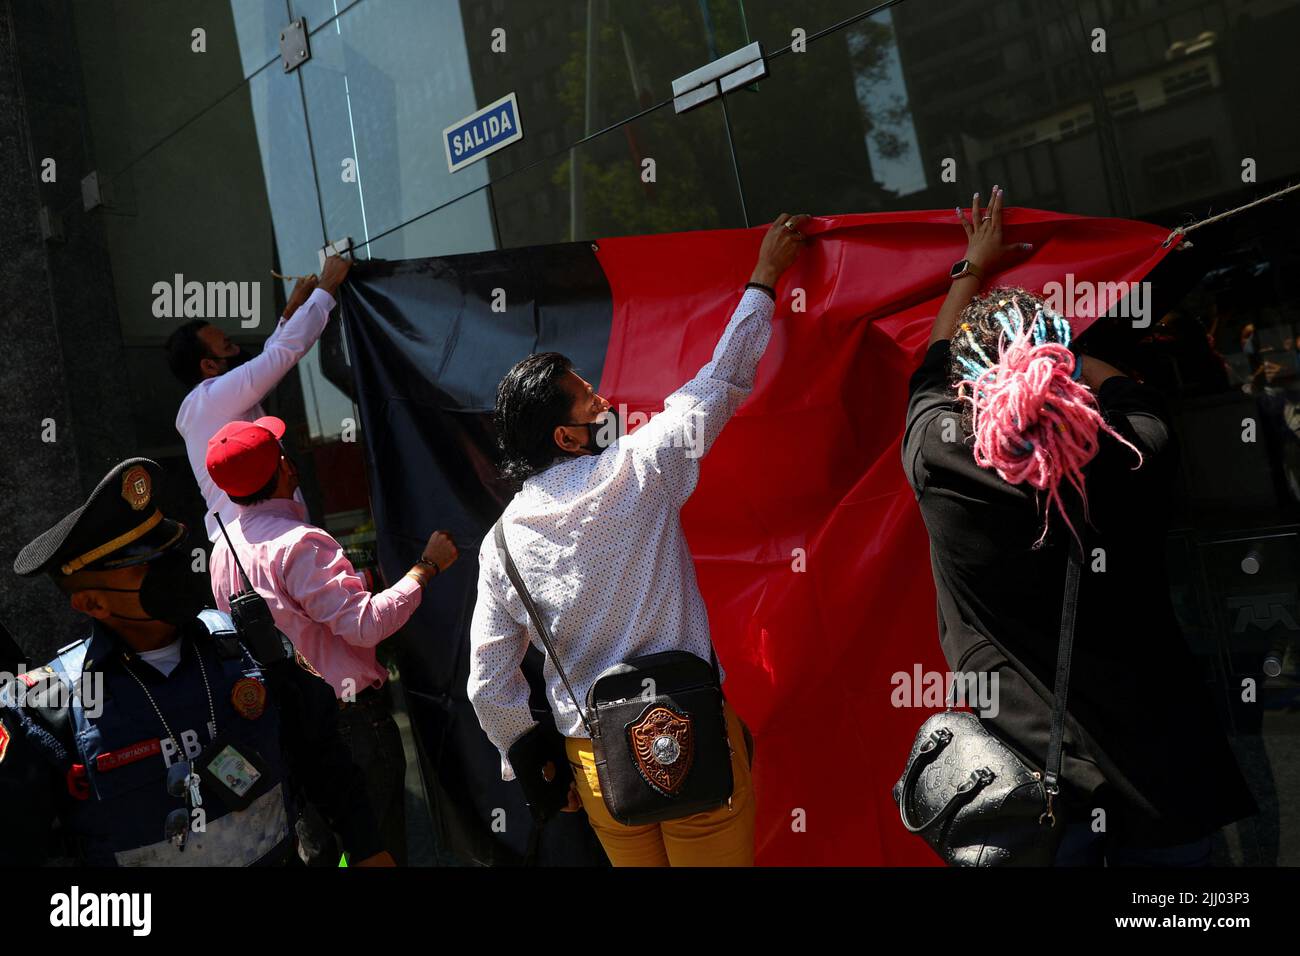 Los empleados cuelgan una bandera mientras protestan fuera de la sede de Telmex después de que el sindicato de la compañía se declarara en huelga después de no llegar a un acuerdo con la compañía sobre un nuevo convenio colectivo, en Ciudad de México, México, el 21 de julio de 2022. REUTERS/Edgard Garrido Foto de stock